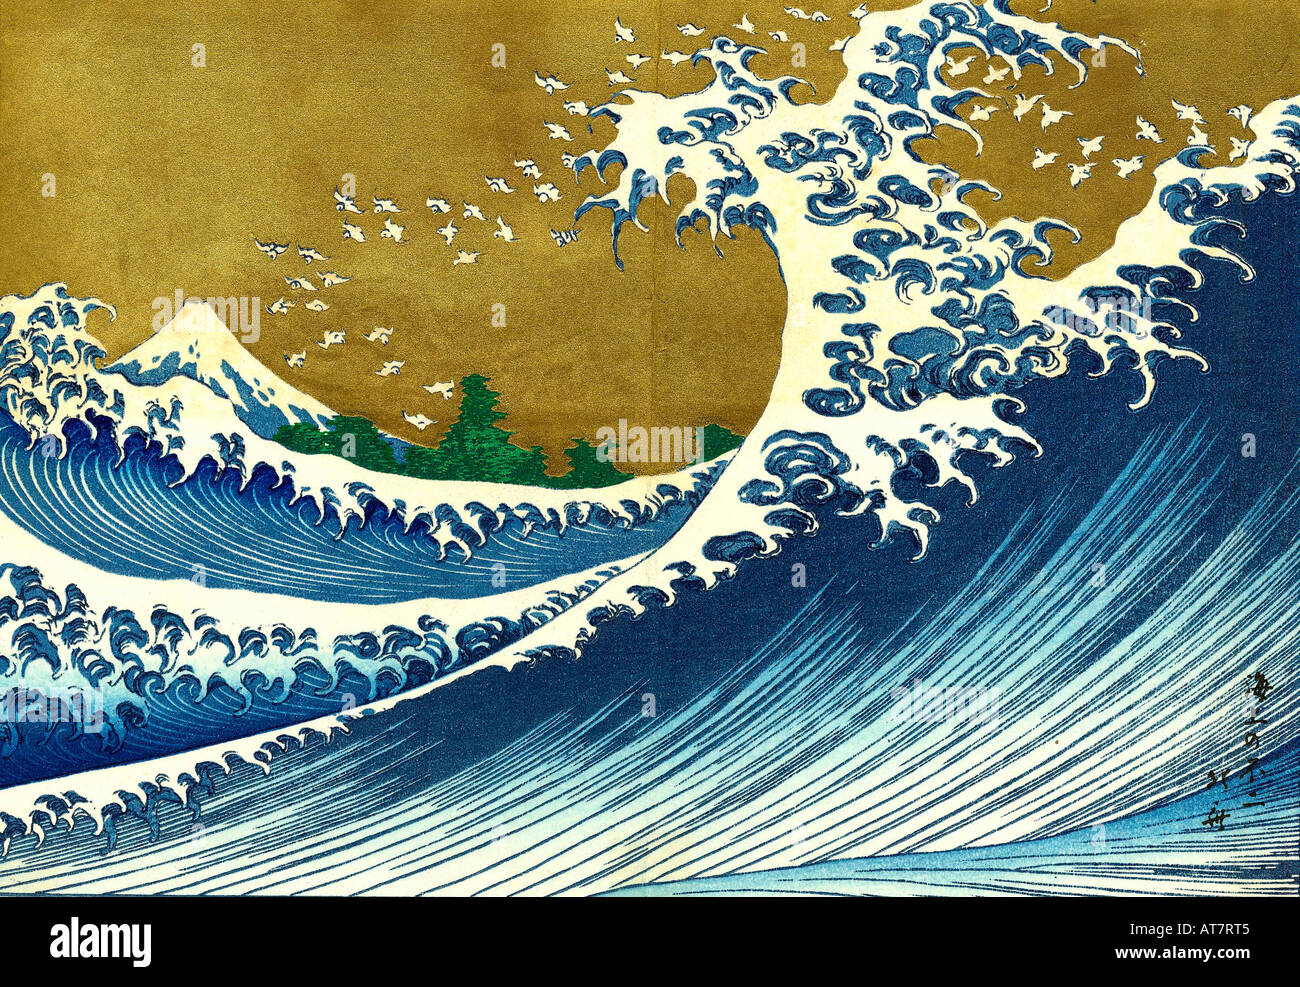 Japanese color wooddblock print from 100 views of Fuji by Katsushika Hokusai Stock Photo